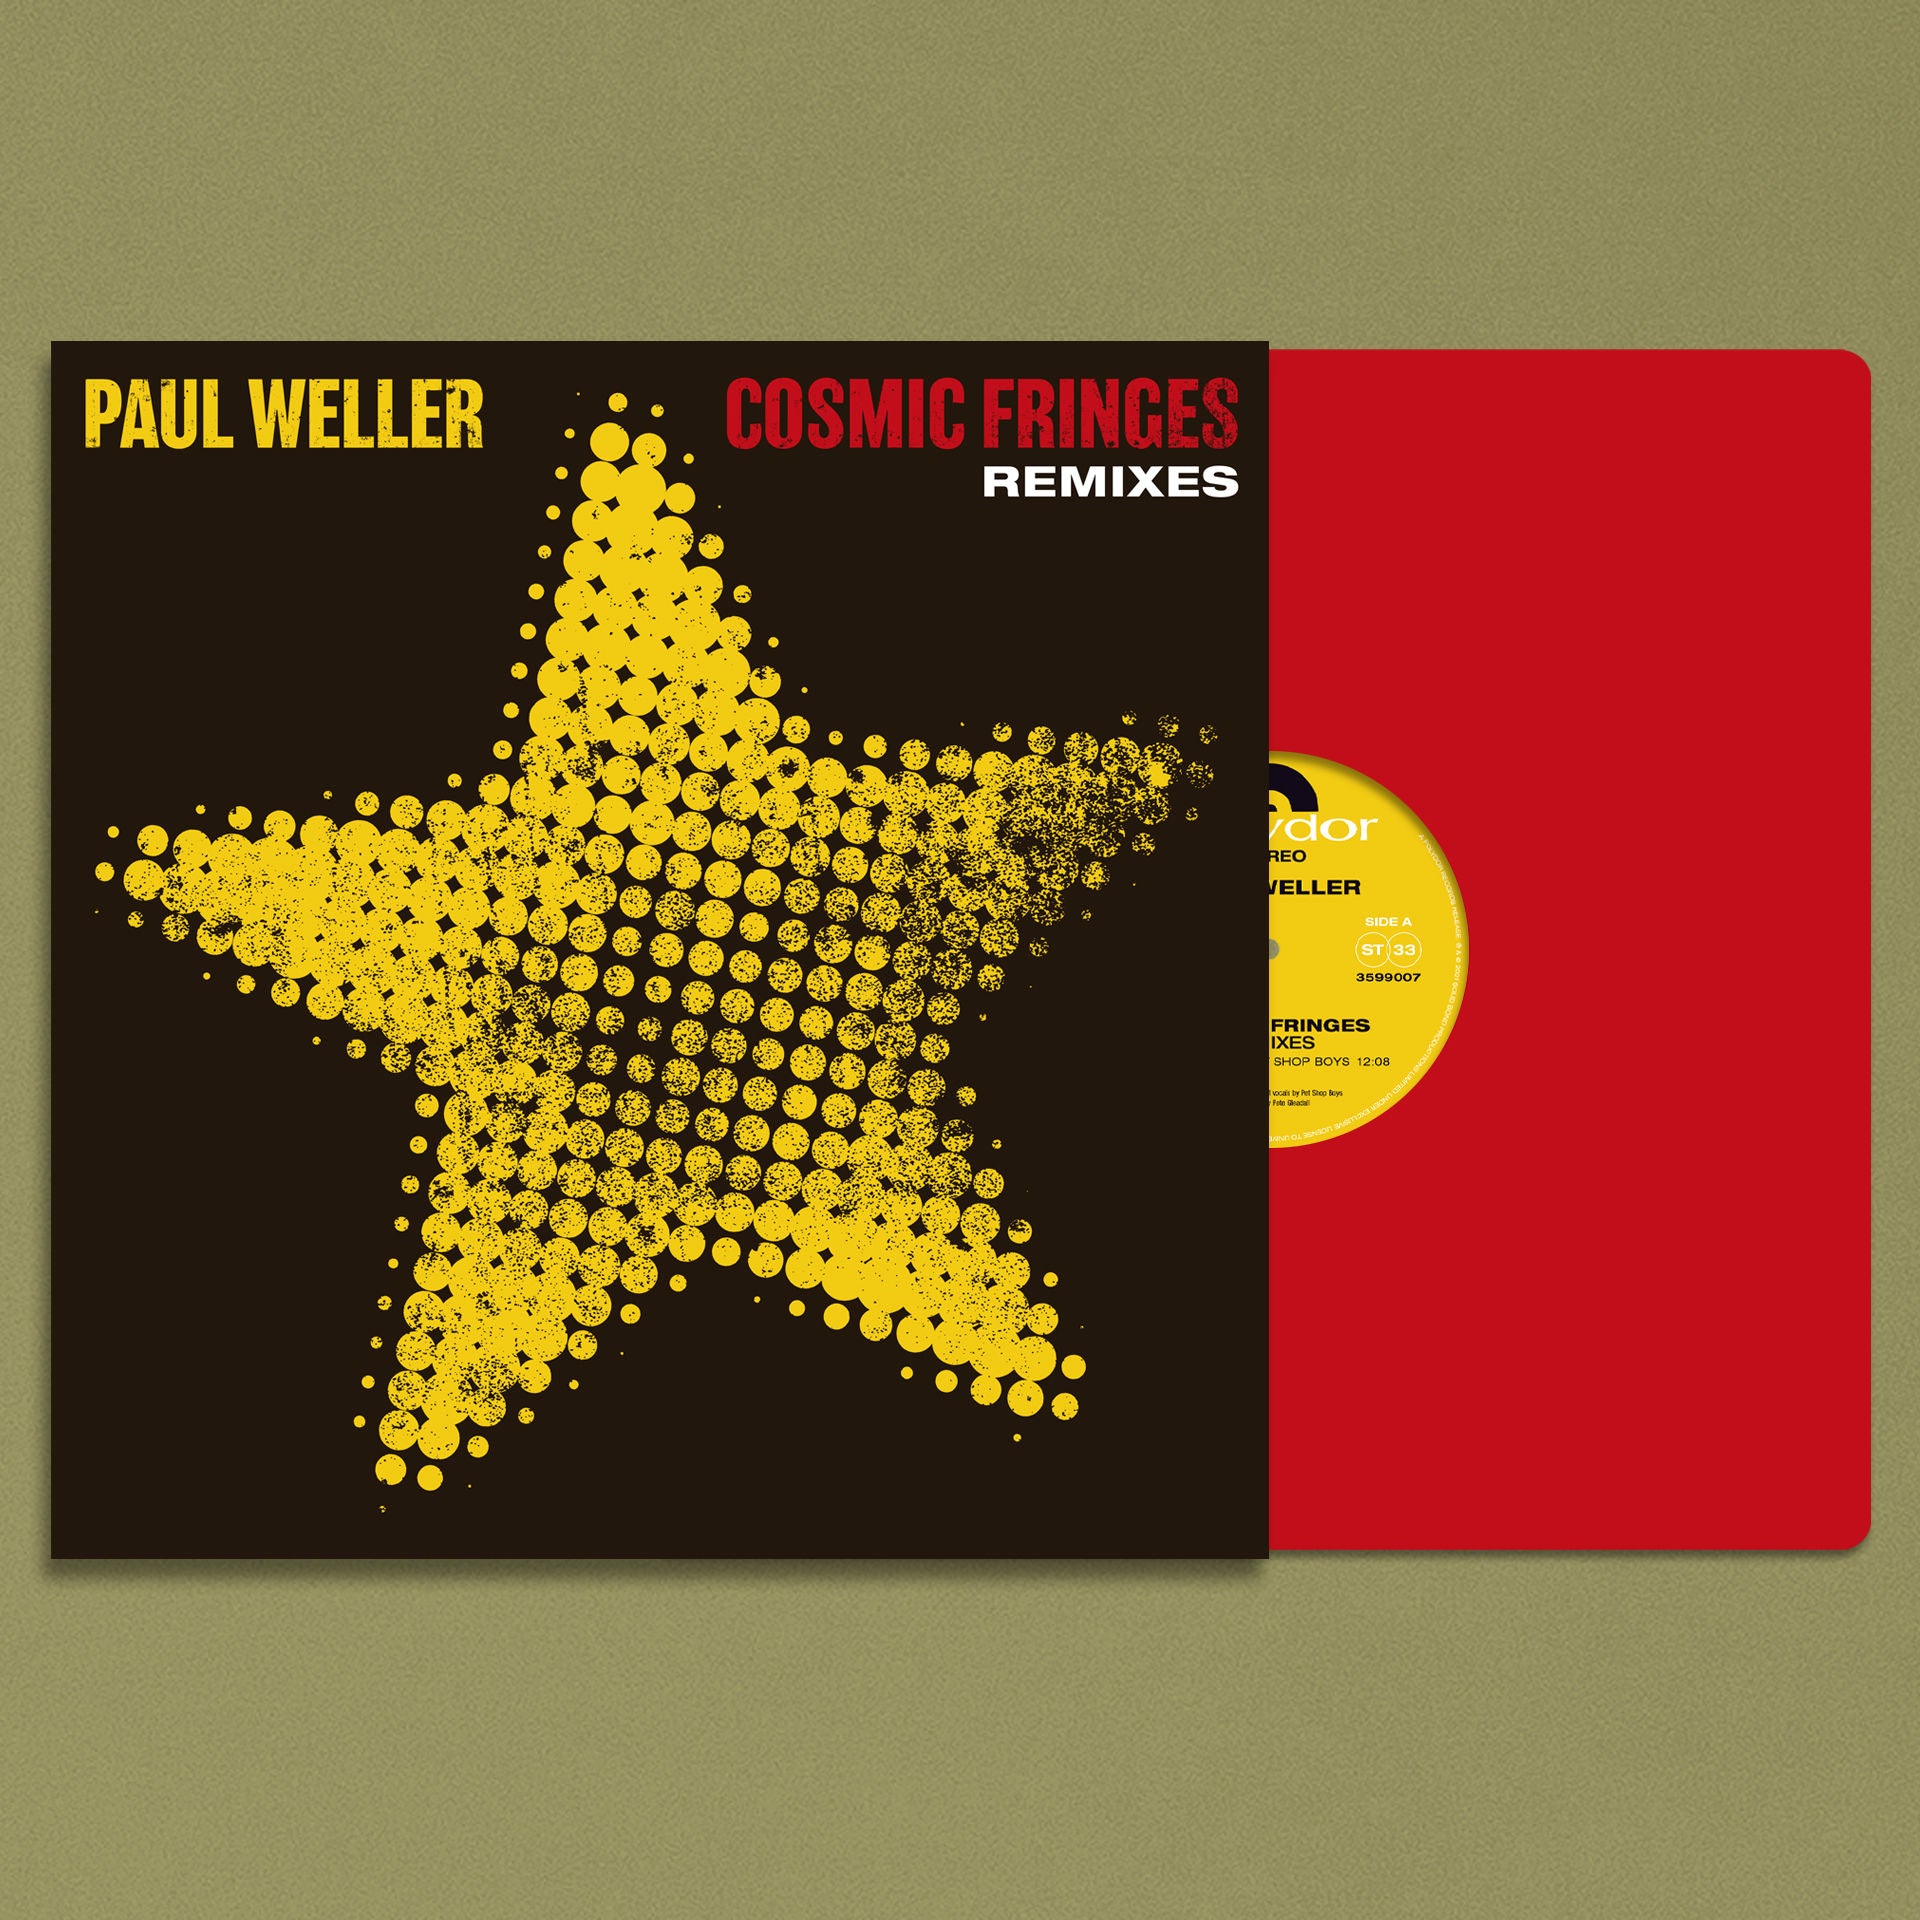 Paul Weller - Cosmic Fringes (Remixes): Vinyl 12" Single